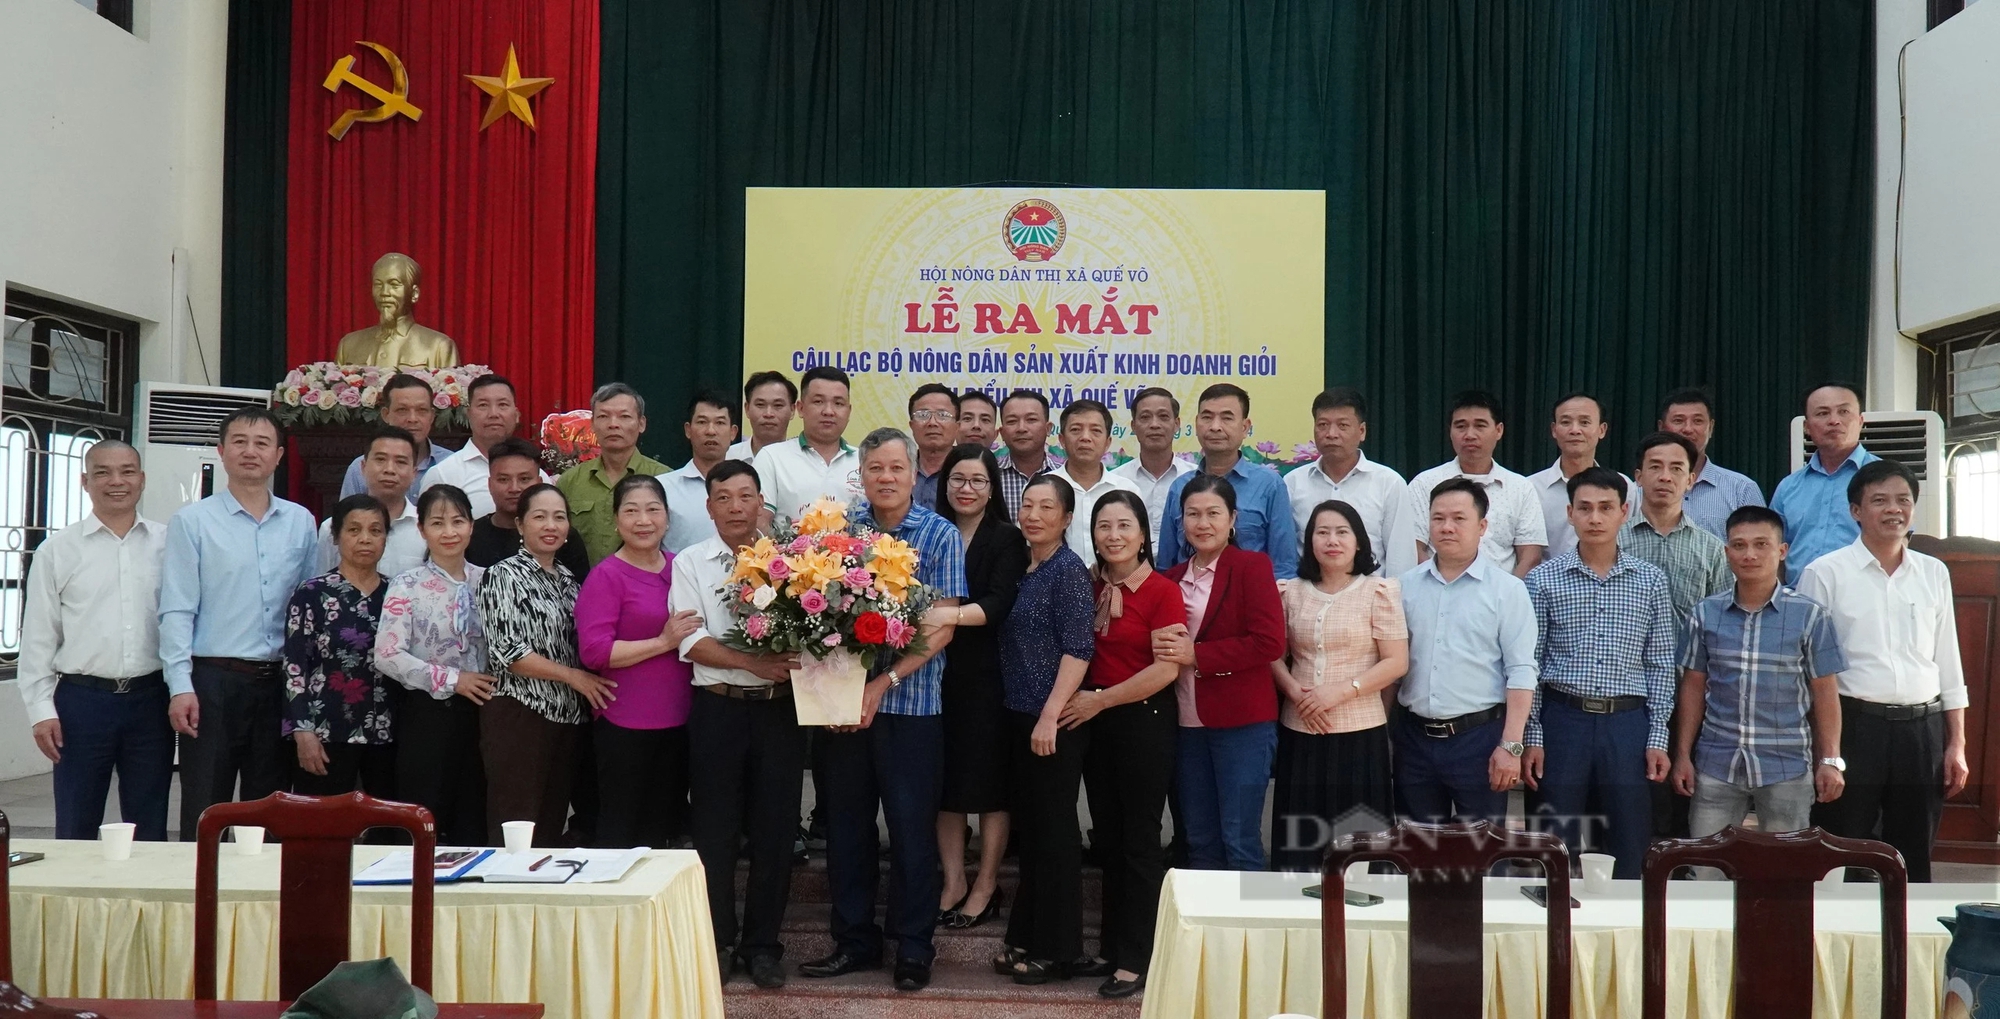 Hội Nông dân thị xã Quế Võ ra mắt câu lạc bộ nông dân sản xuất kinh doanh giỏi tiêu biểu- Ảnh 5.